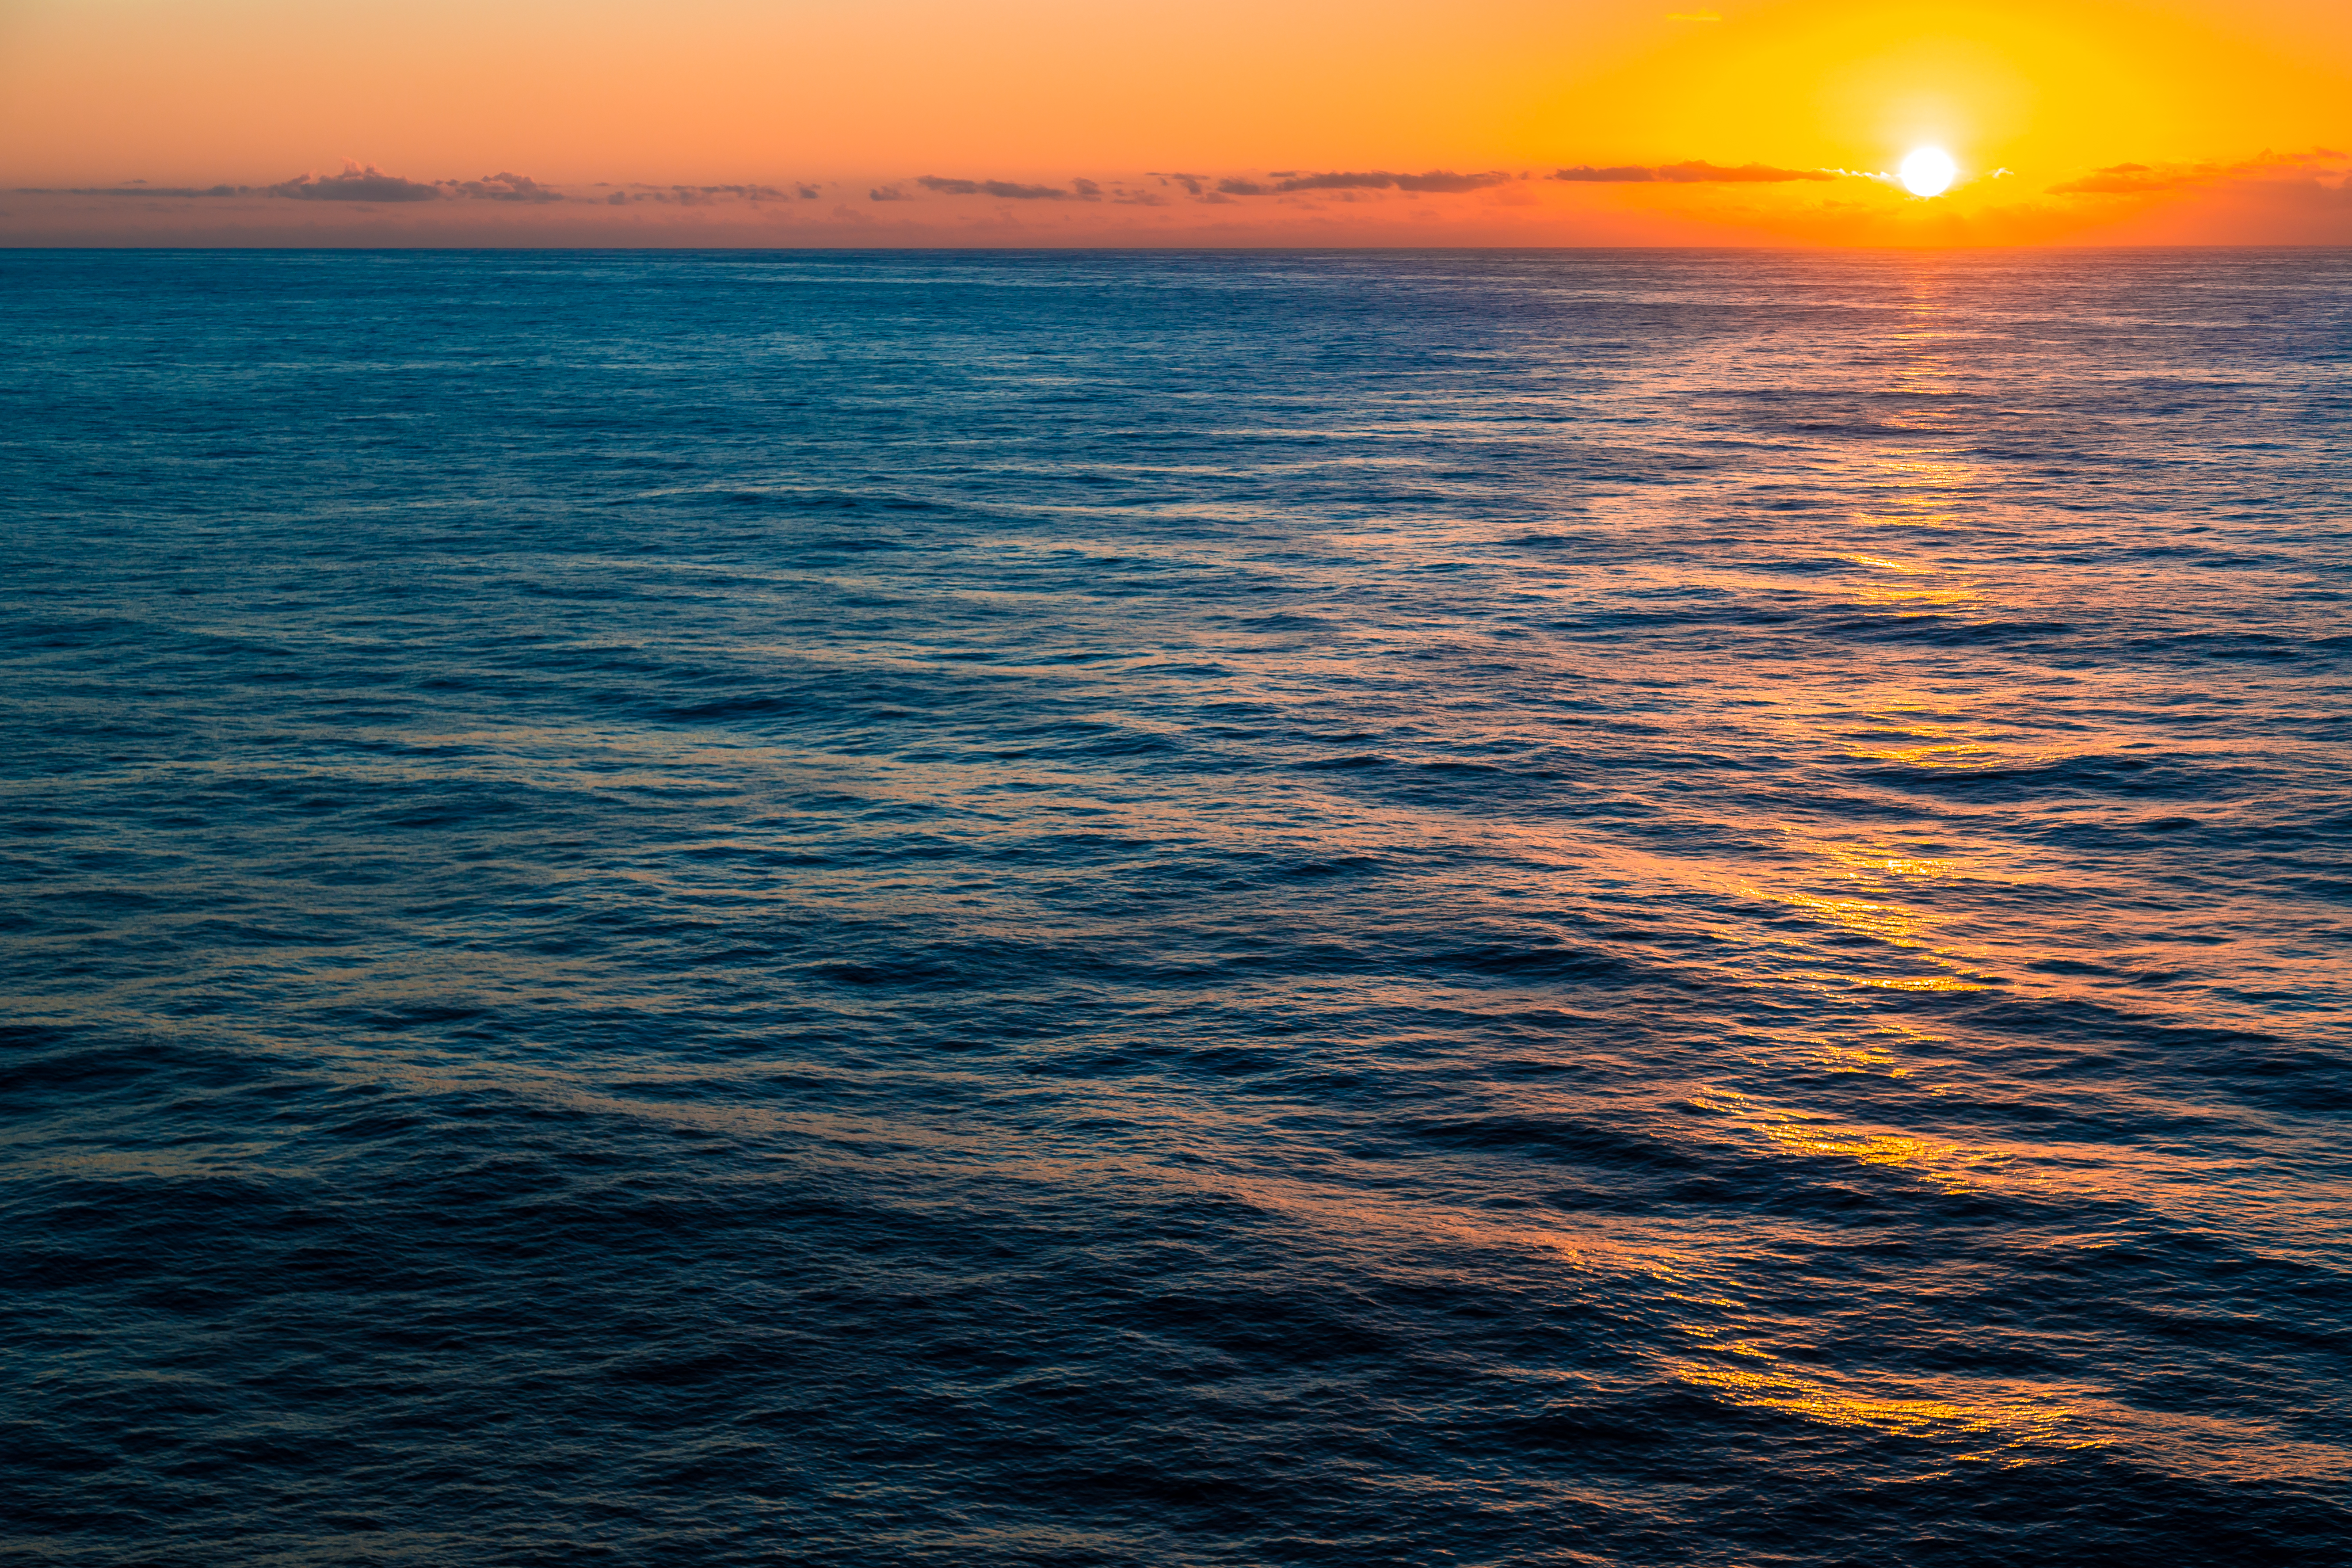 Mar do Oceano Atlântico com por do sol ao fundo, no horizonte